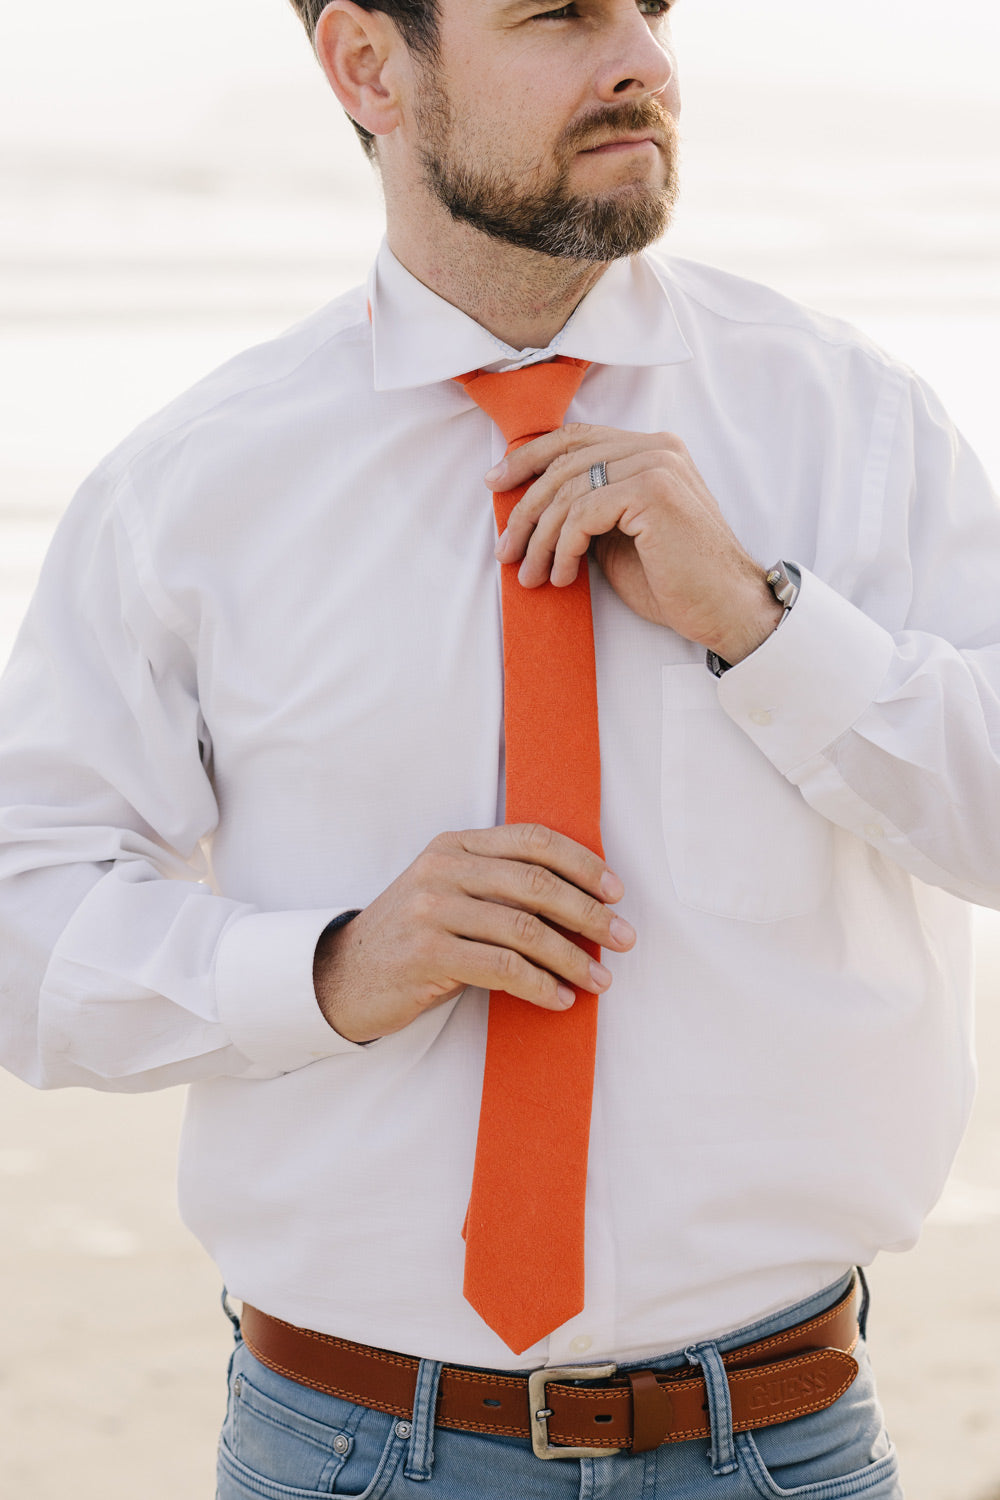 Tangerine tie worn with a white shirt.